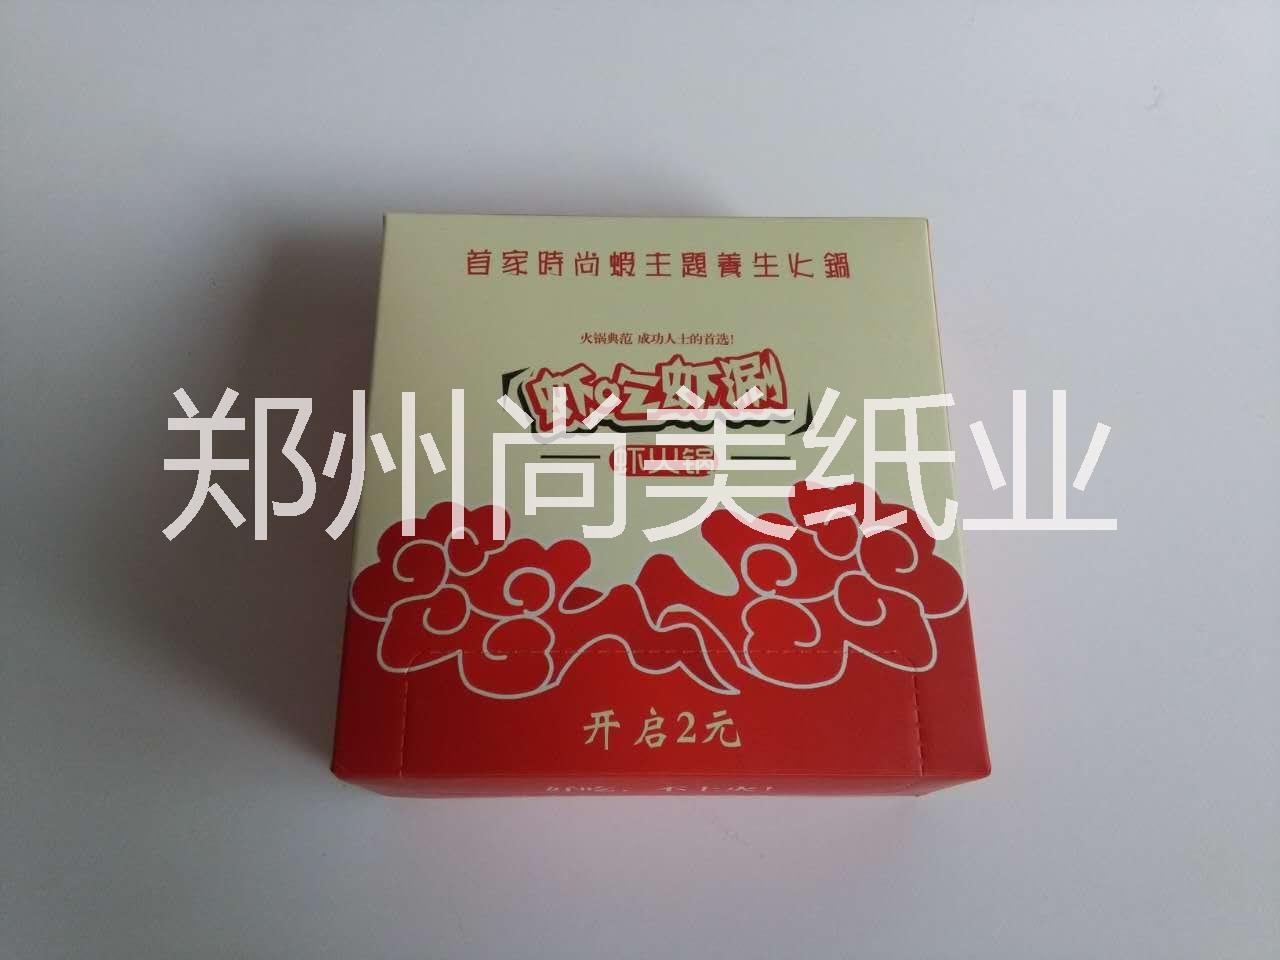 郑州车载圆筒抽纸 抽纸定做 郑州抽纸厂家 广告抽纸